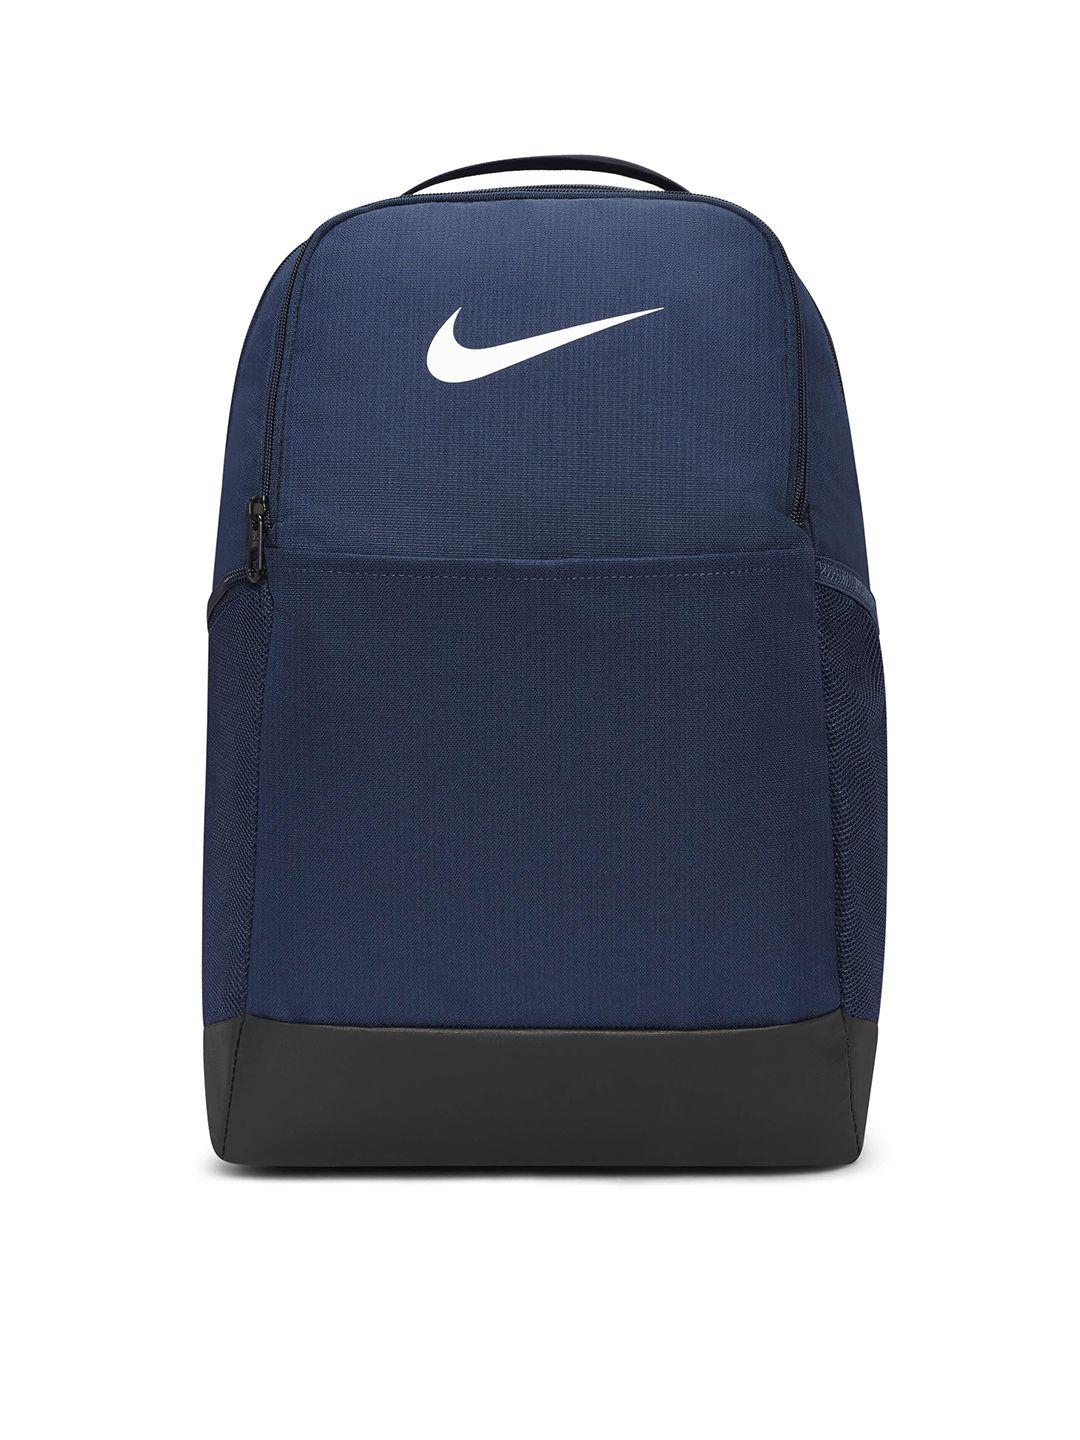 nike brand logo printed rasilia 9.5 training backpack